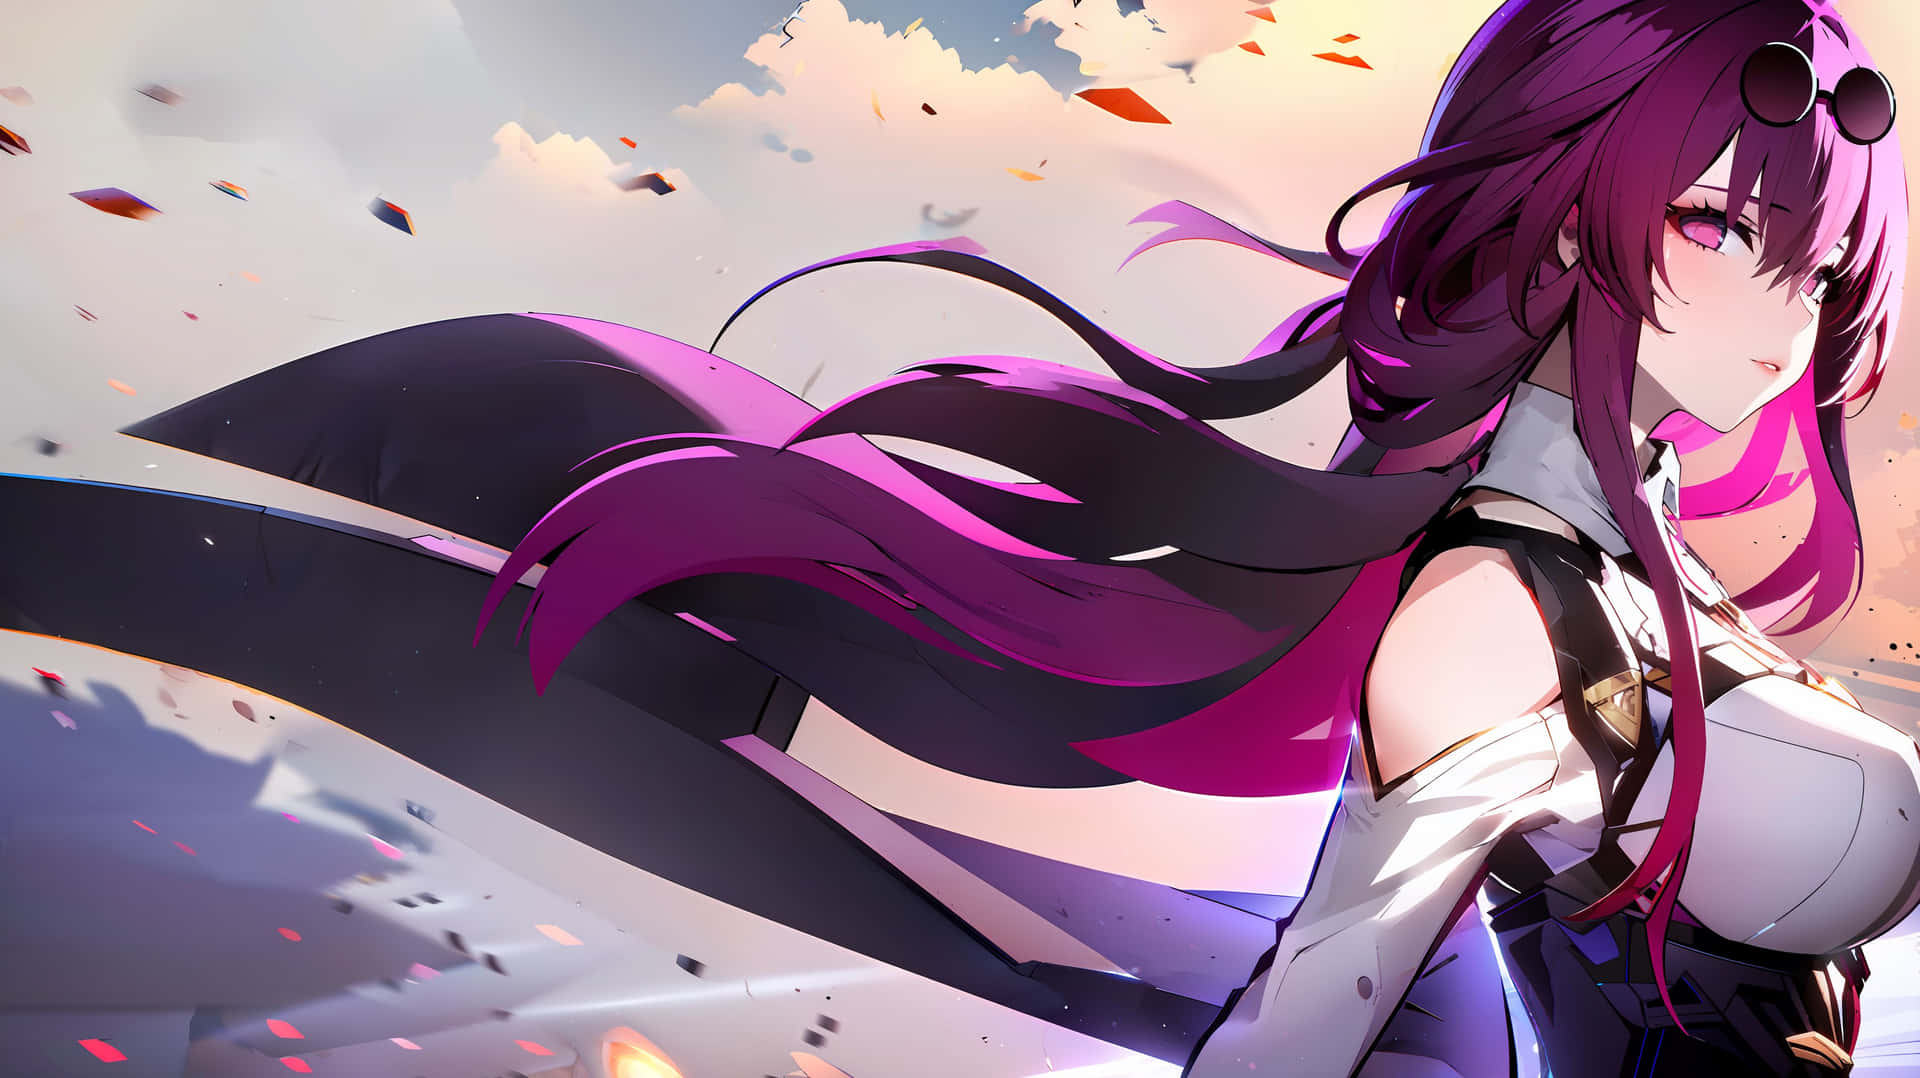 Anime Girl Wind Swept Hair Sunset Wallpaper